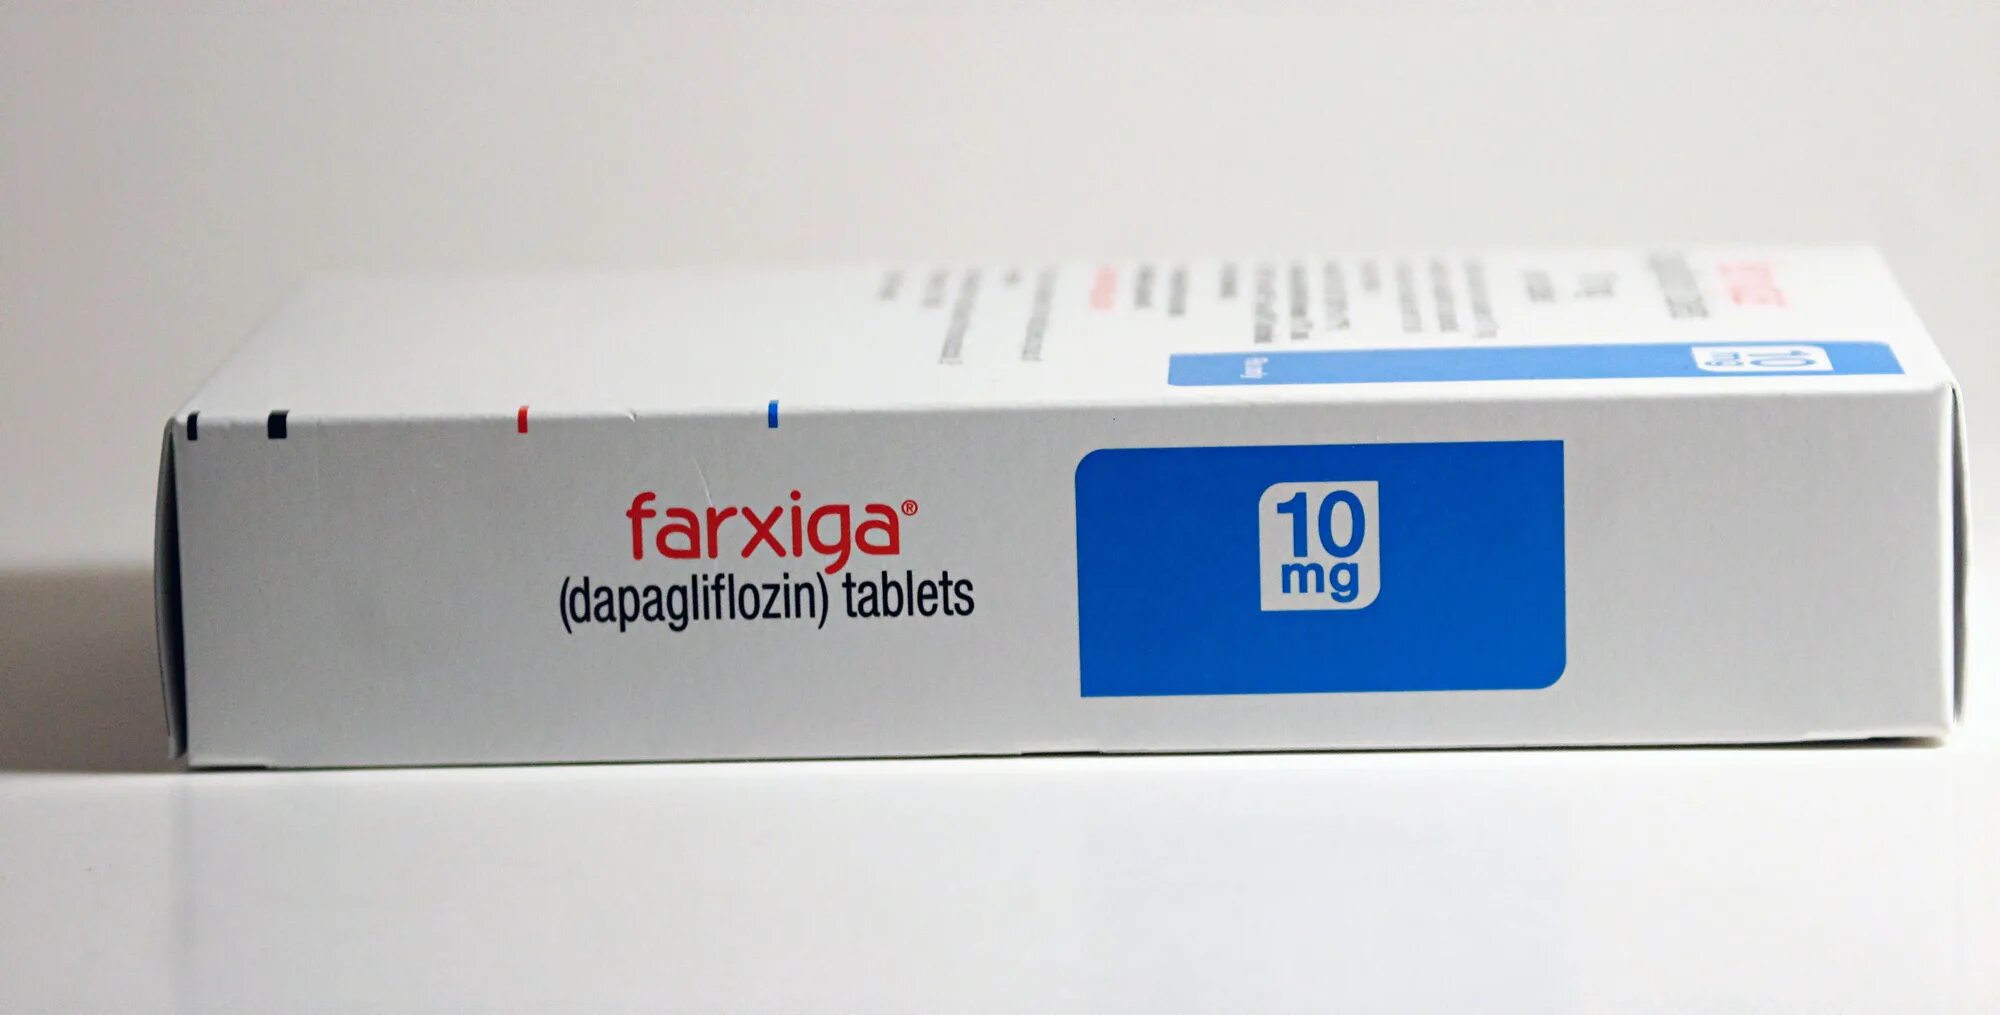 Дапаглифлозин канон цена. Форсига 10 мг. Dapagliflozin дапаглифлозин. Фарсига таблетки. Дапаглифлозин форсига 10 мг.